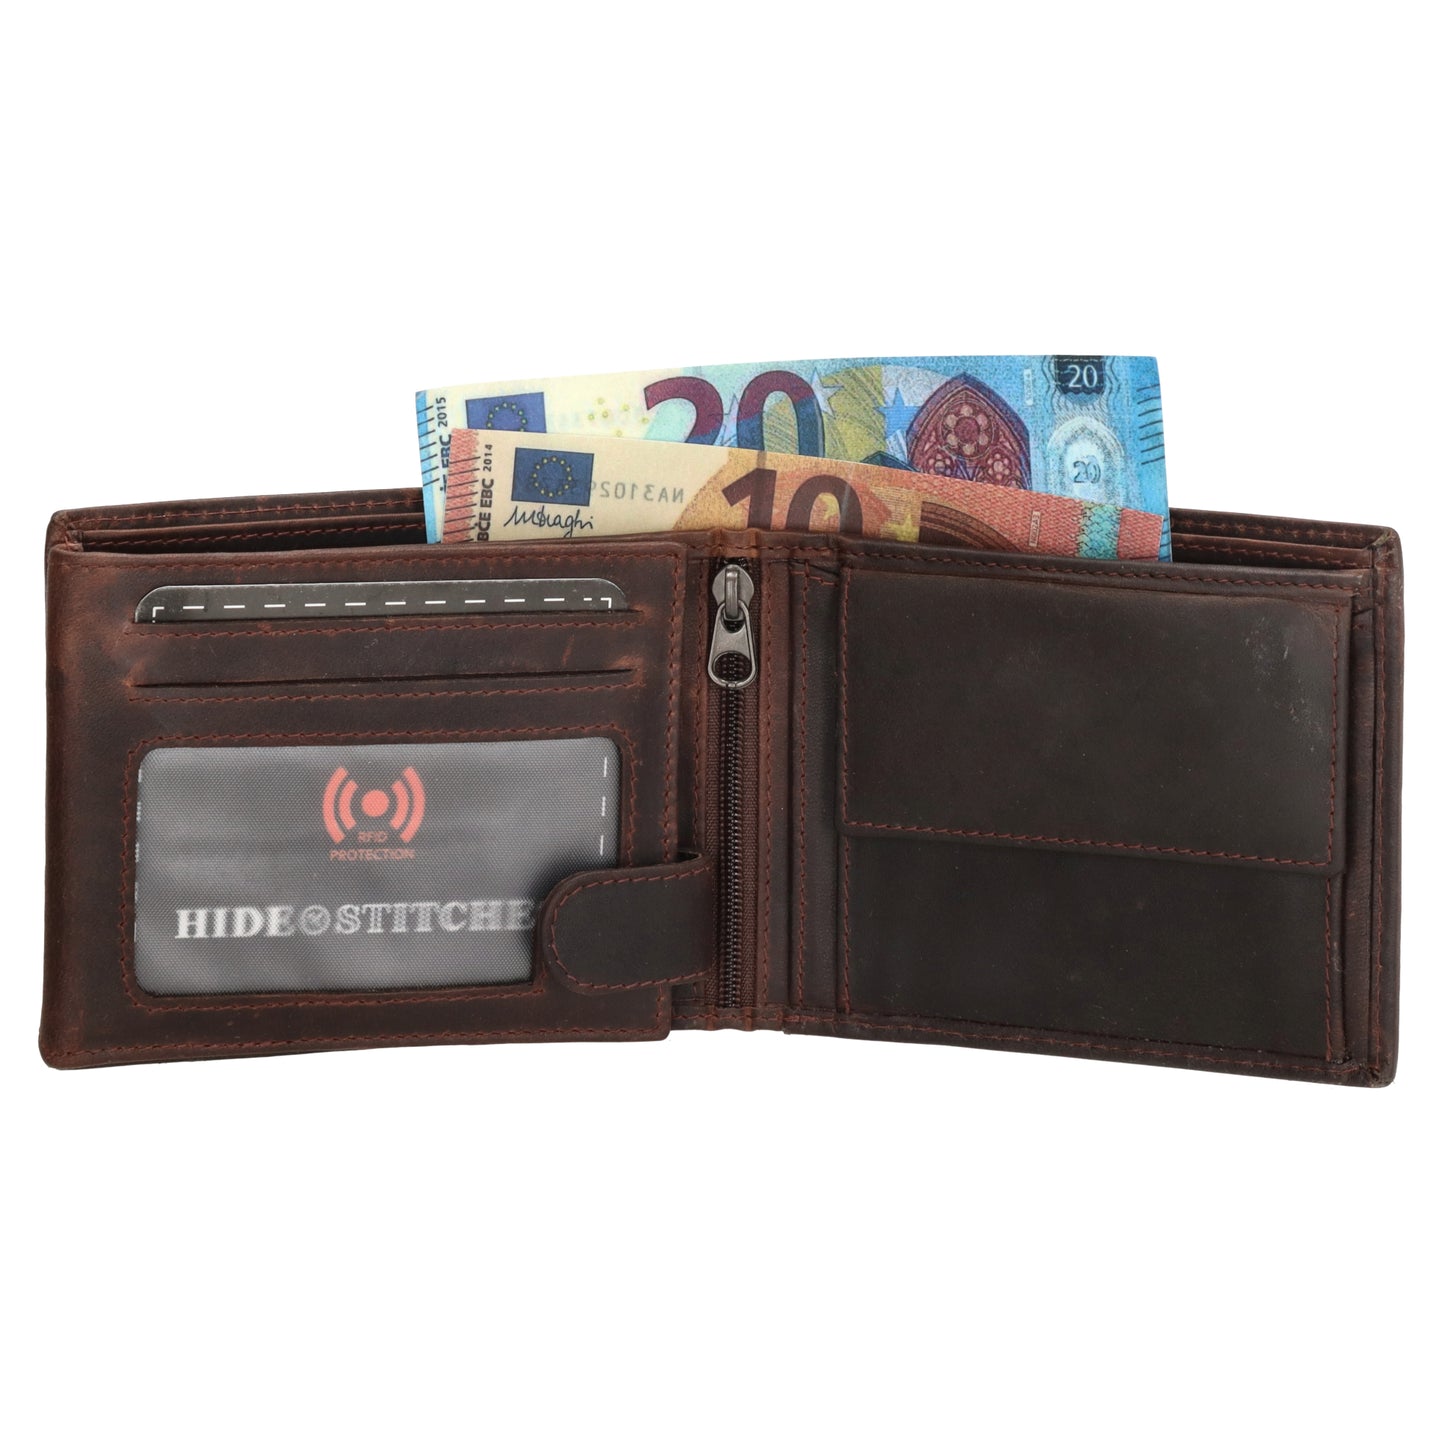 Geldbörse Querformat 9 x 11cm mit Reißverschluss in Braun aus Leder